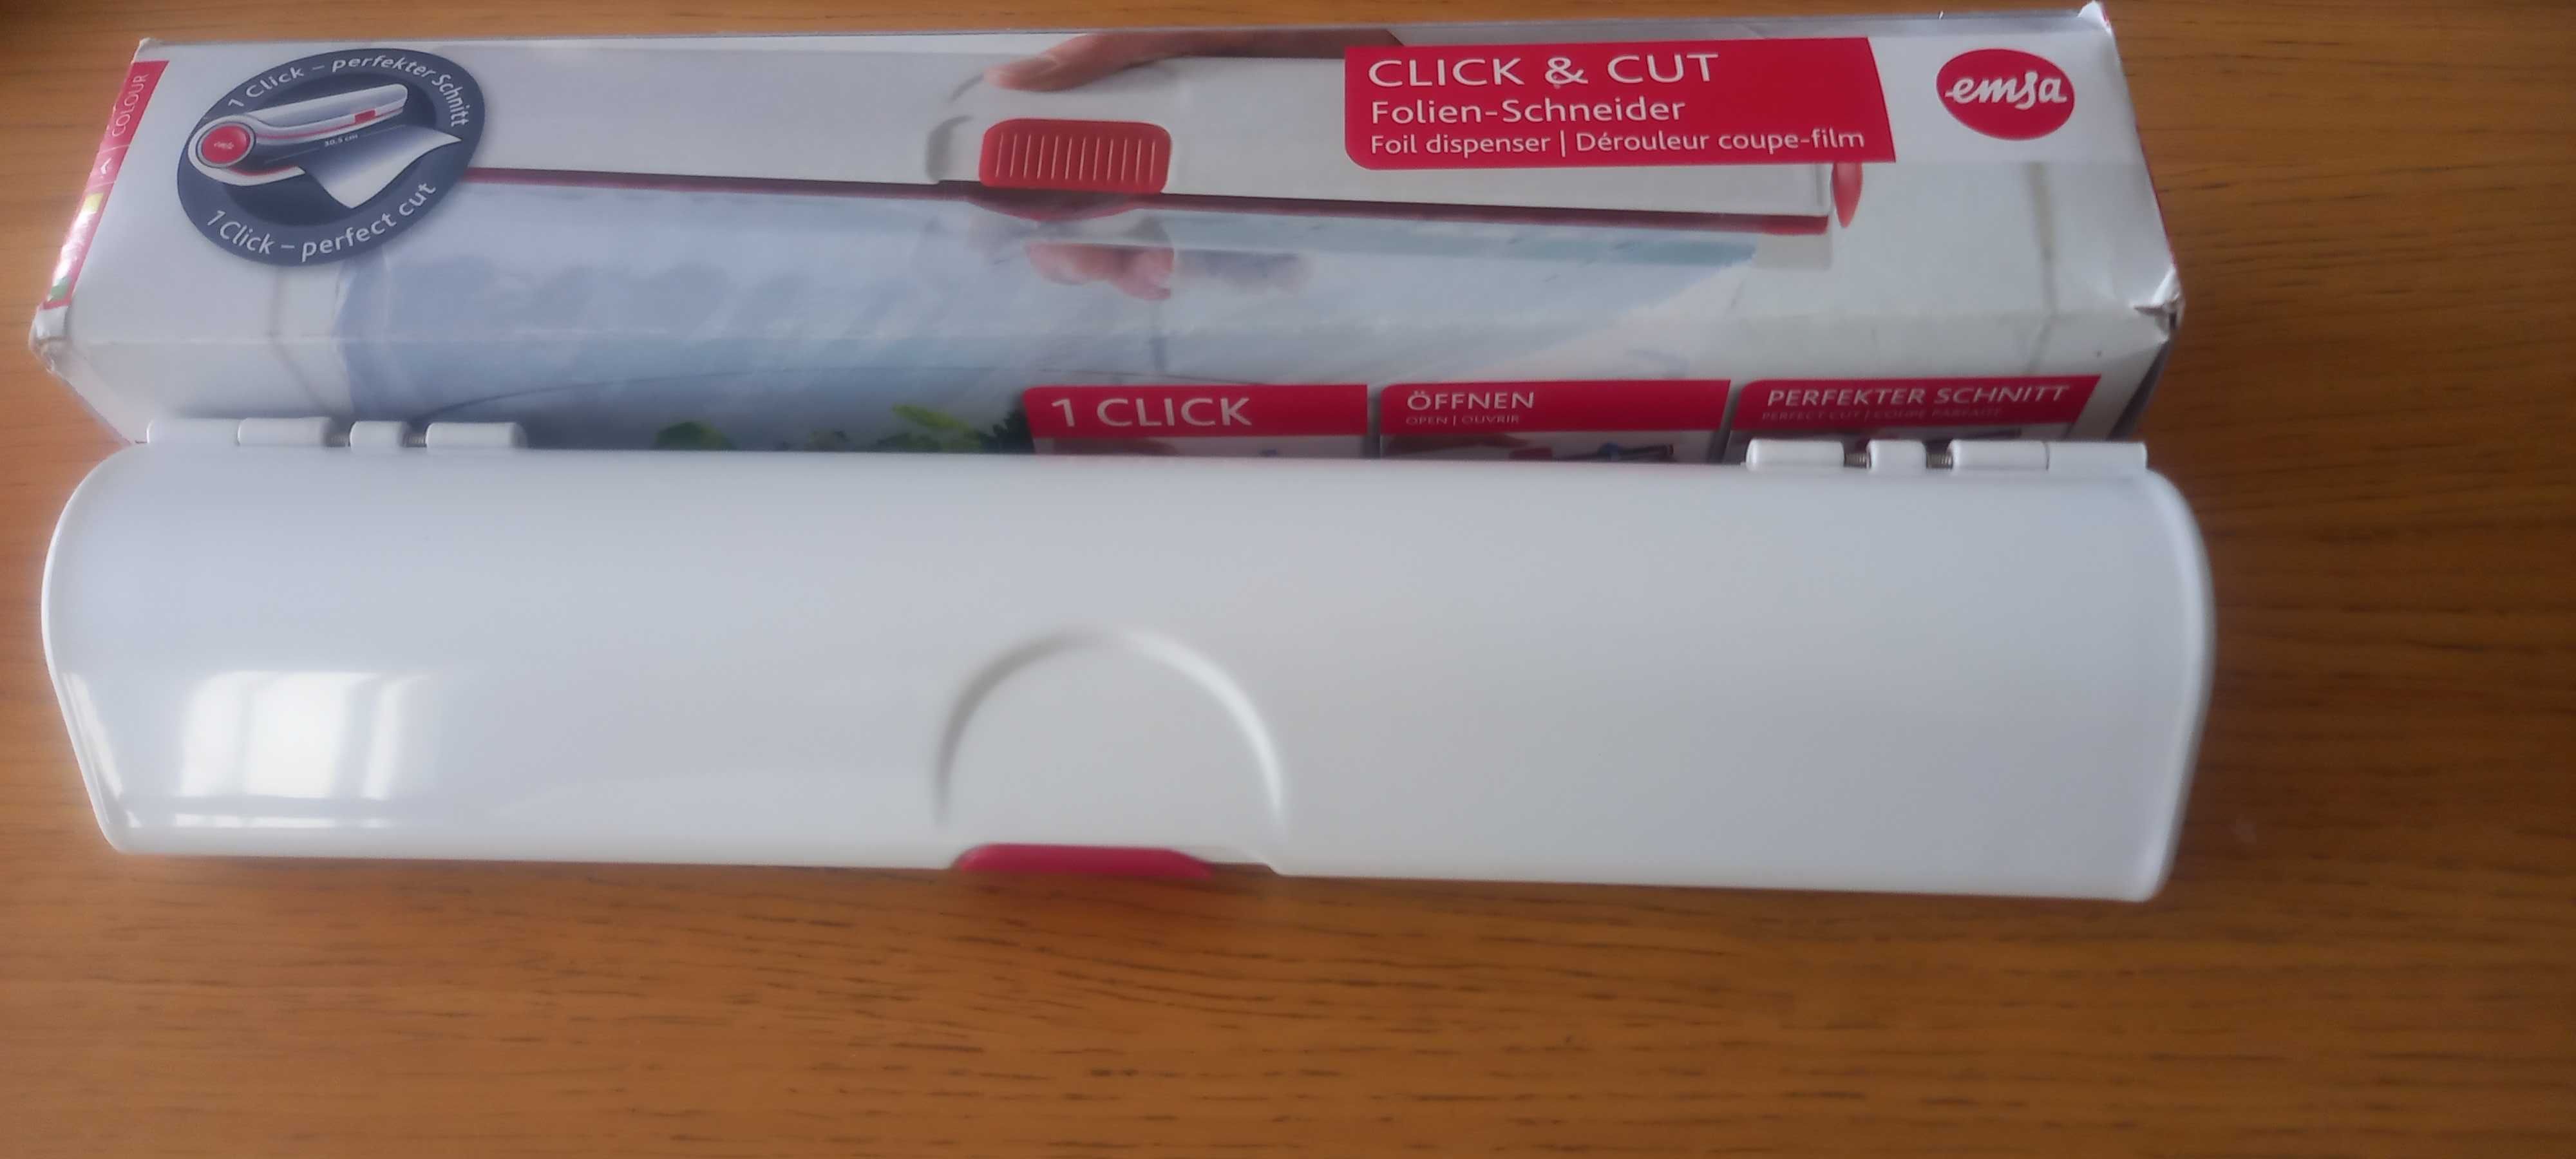 CLICK & CUT Coupe-film - EMSA